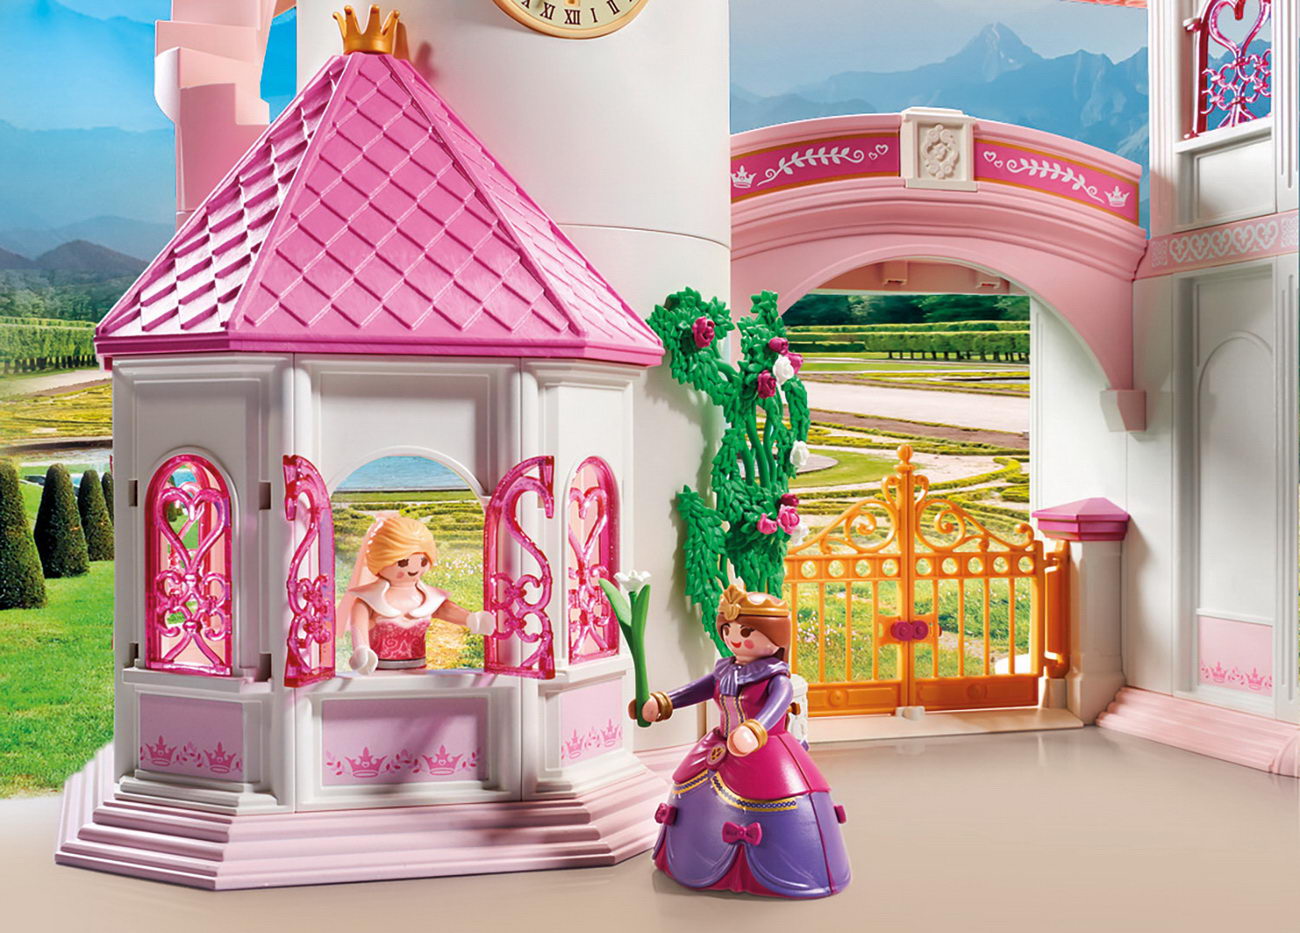 Playmobil 70447 - Großes Prinzessinnenschloss - Princess